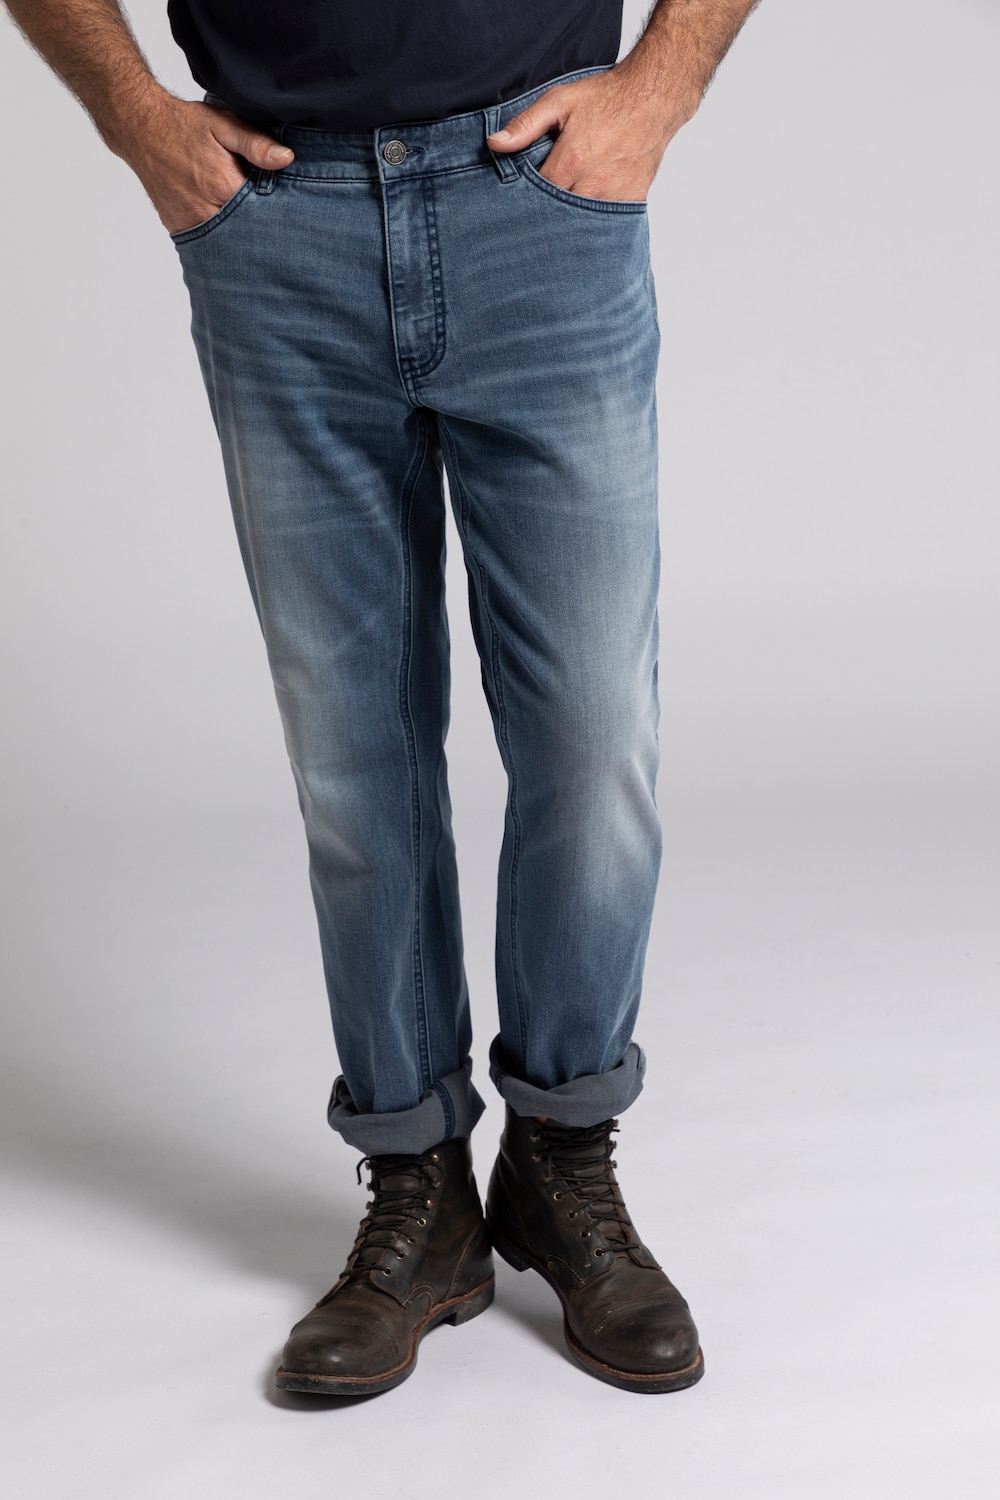 Grote Maten jeans, Heren, grijs, Maat: 27, Katoen/Polyester, JP1880